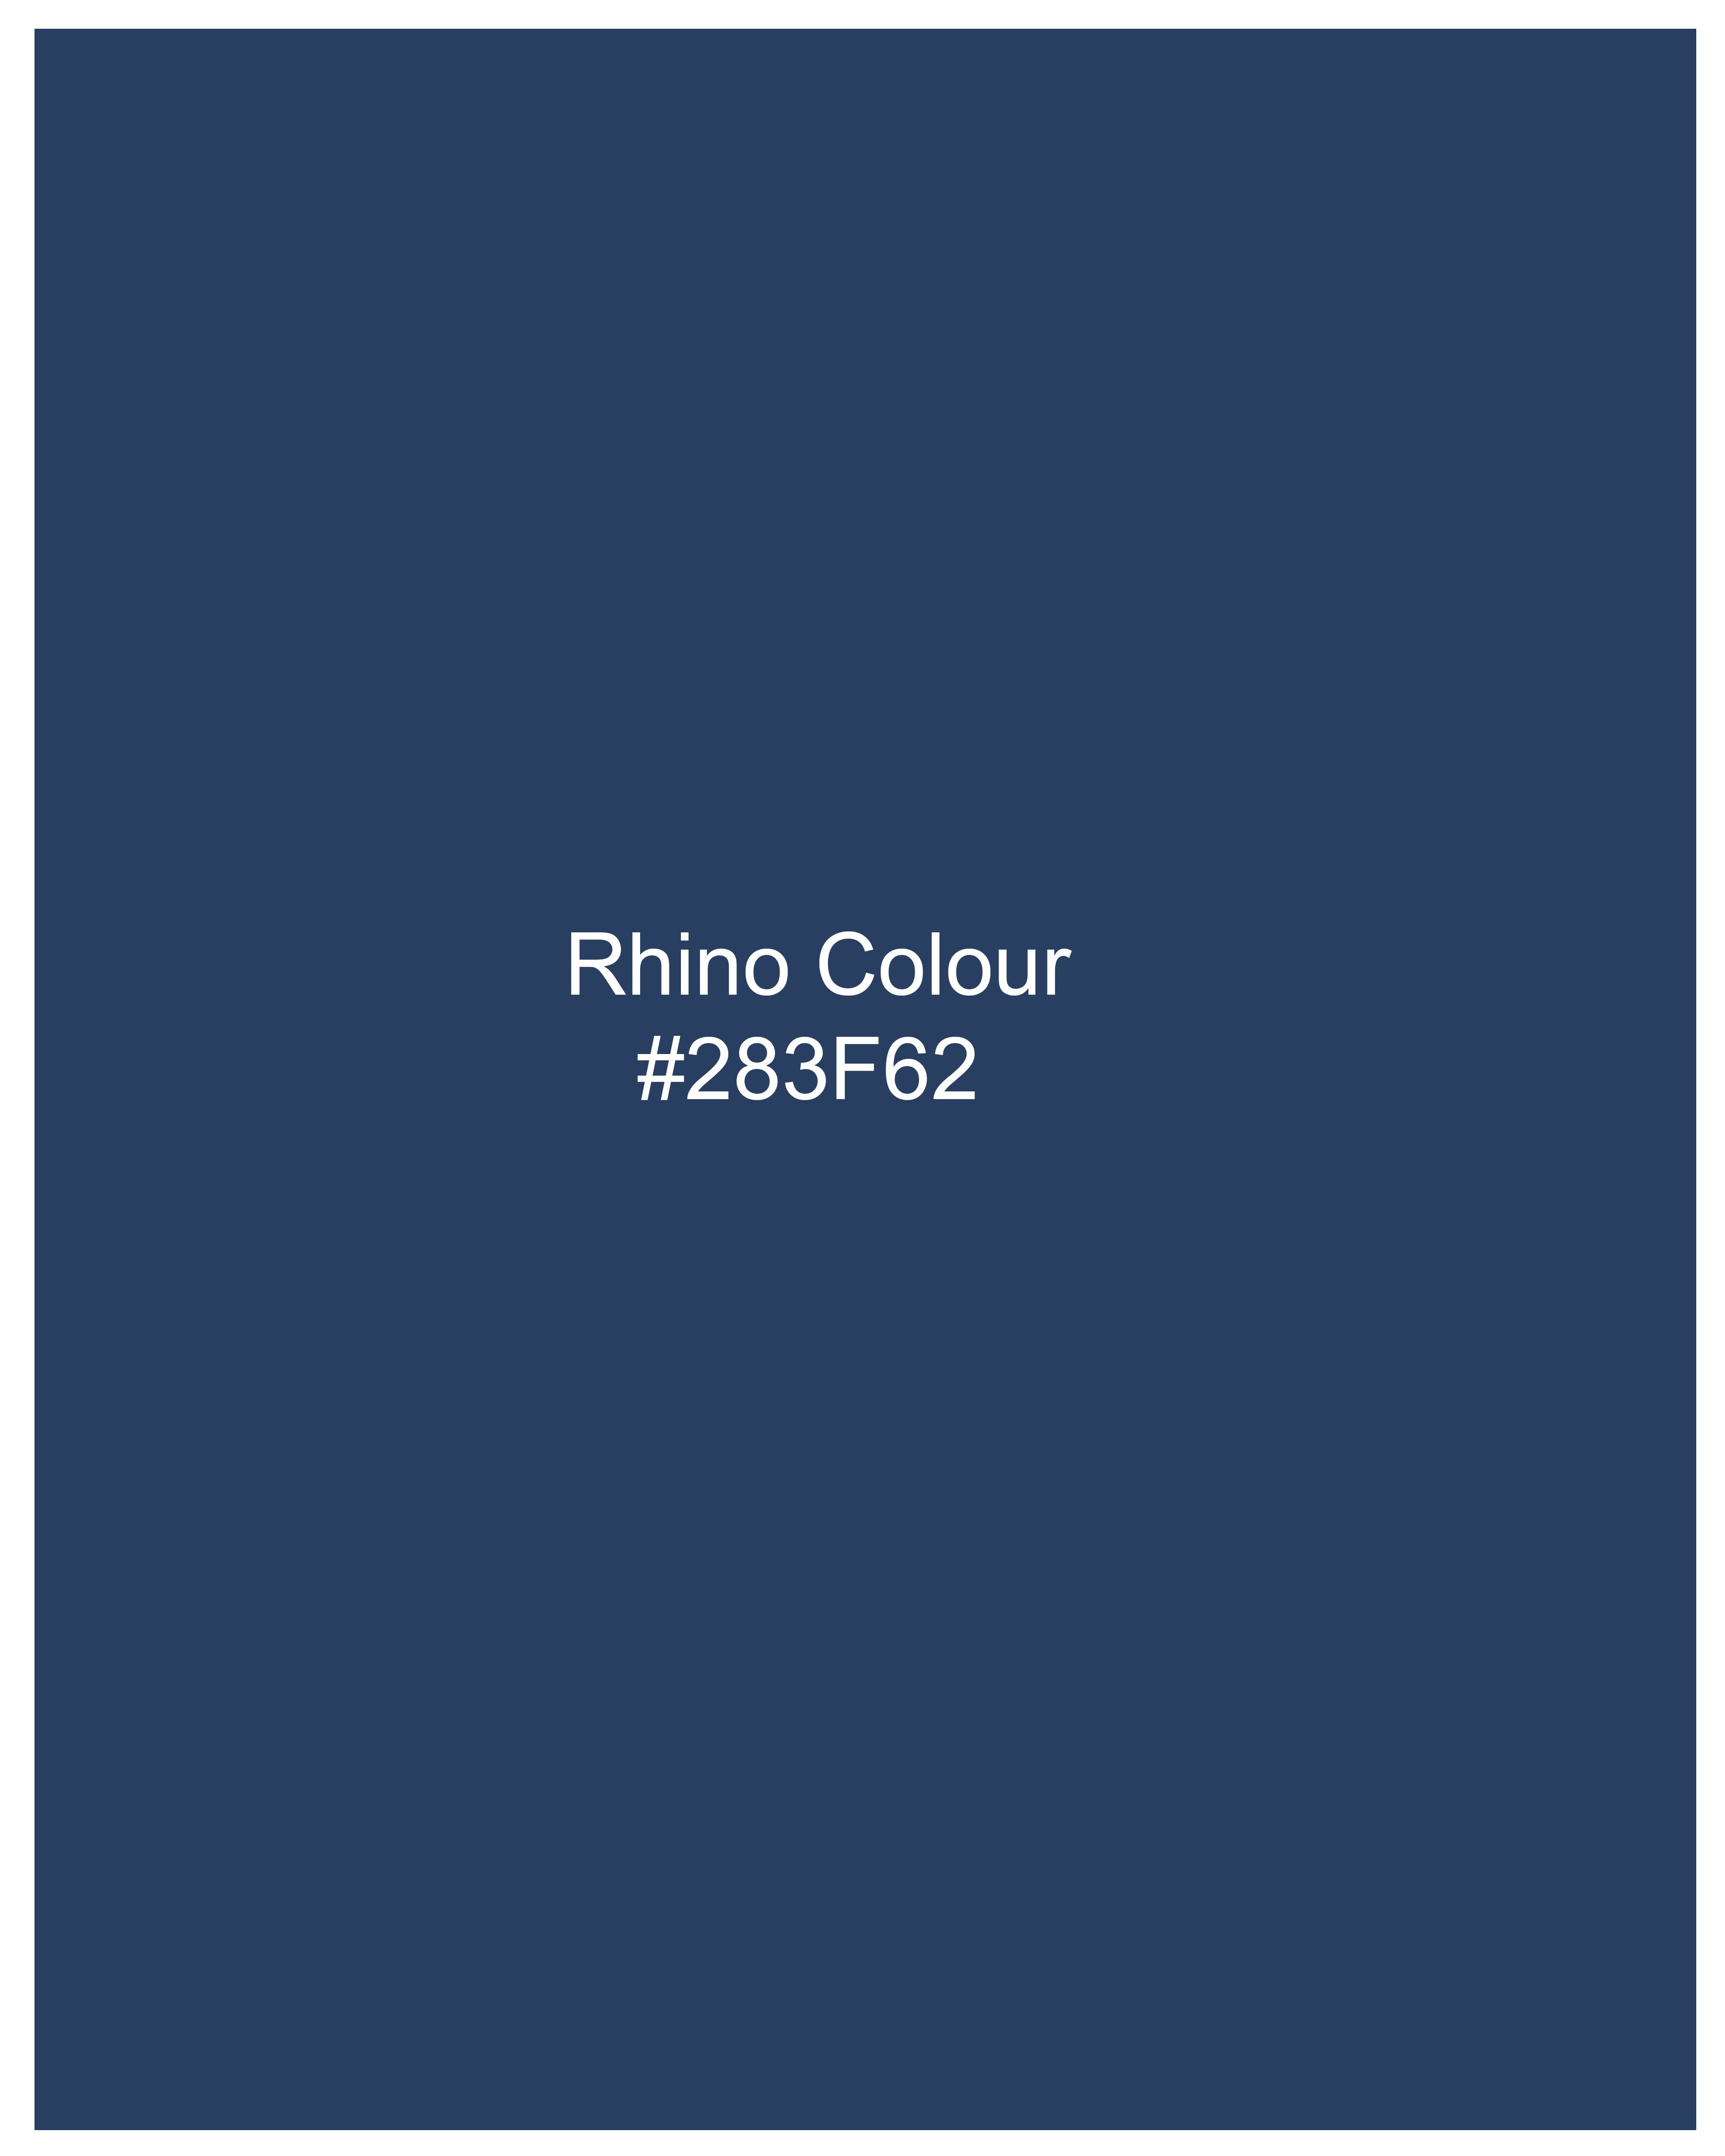 Rhino Blue Super Soft Premium Cotton Shirt 9332-38, 9332-H-38, 9332-39, 9332-H-39, 9332-40, 9332-H-40, 9332-42, 9332-H-42, 9332-44, 9332-H-44, 9332-46, 9332-H-46, 9332-48, 9332-H-48, 9332-50, 9332-H-50, 9332-52, 9332-H-52